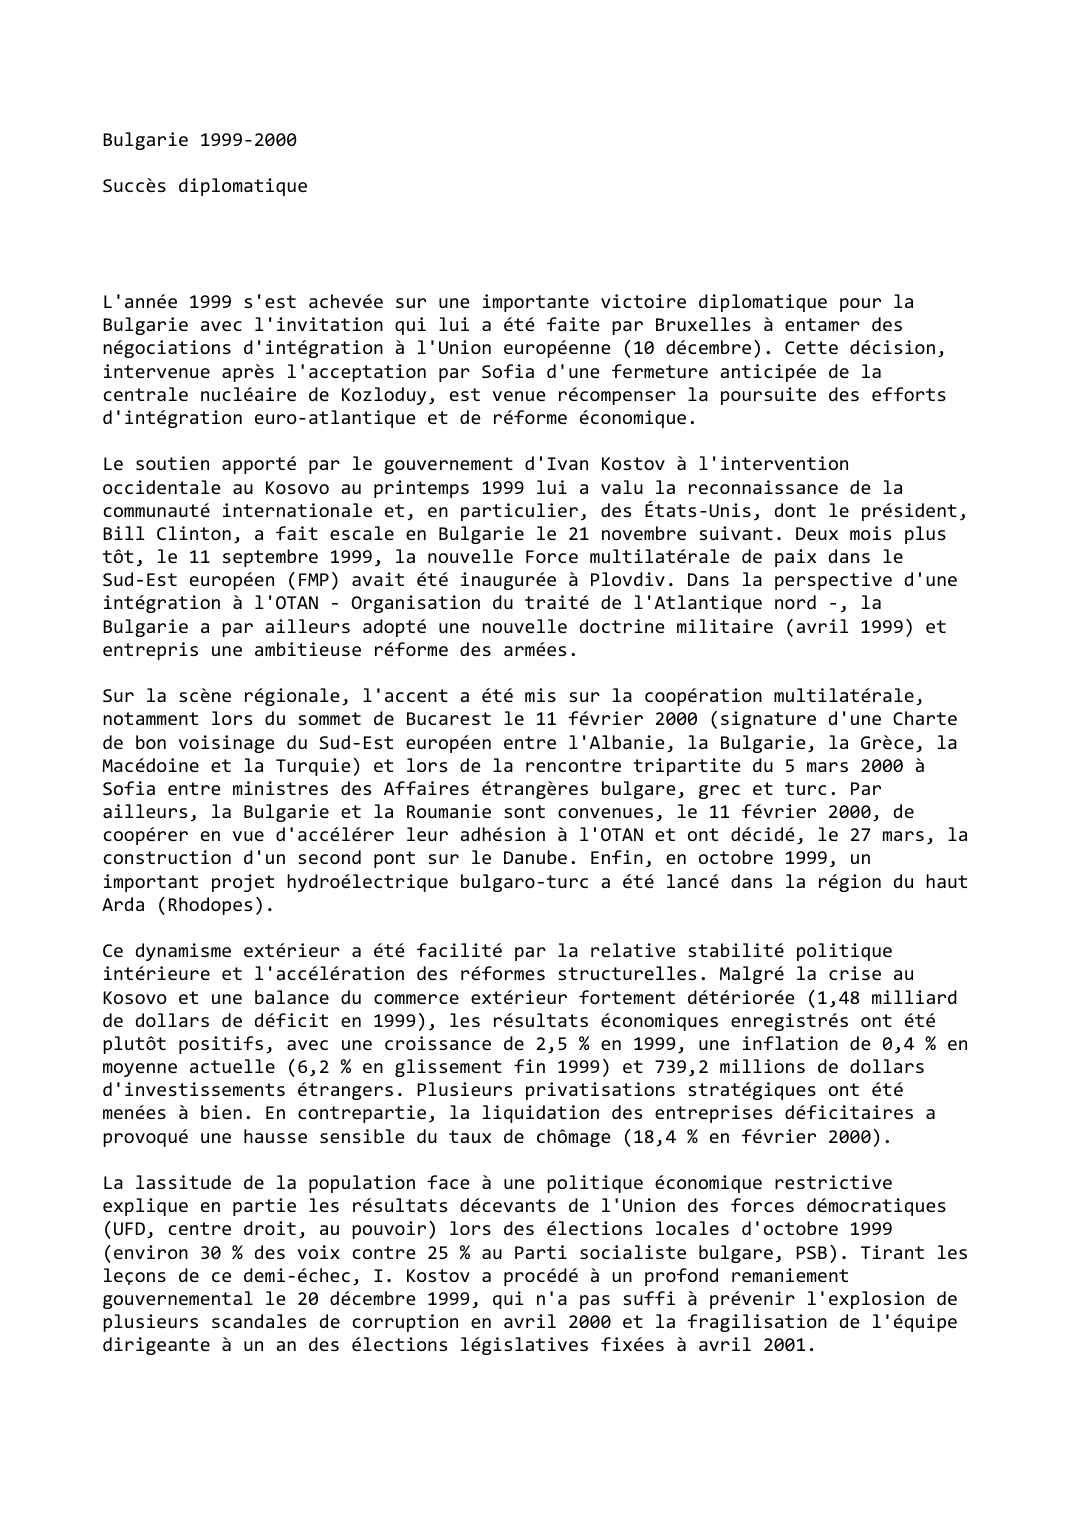 Prévisualisation du document Bulgarie (1999-2000)  

Succès diplomatique